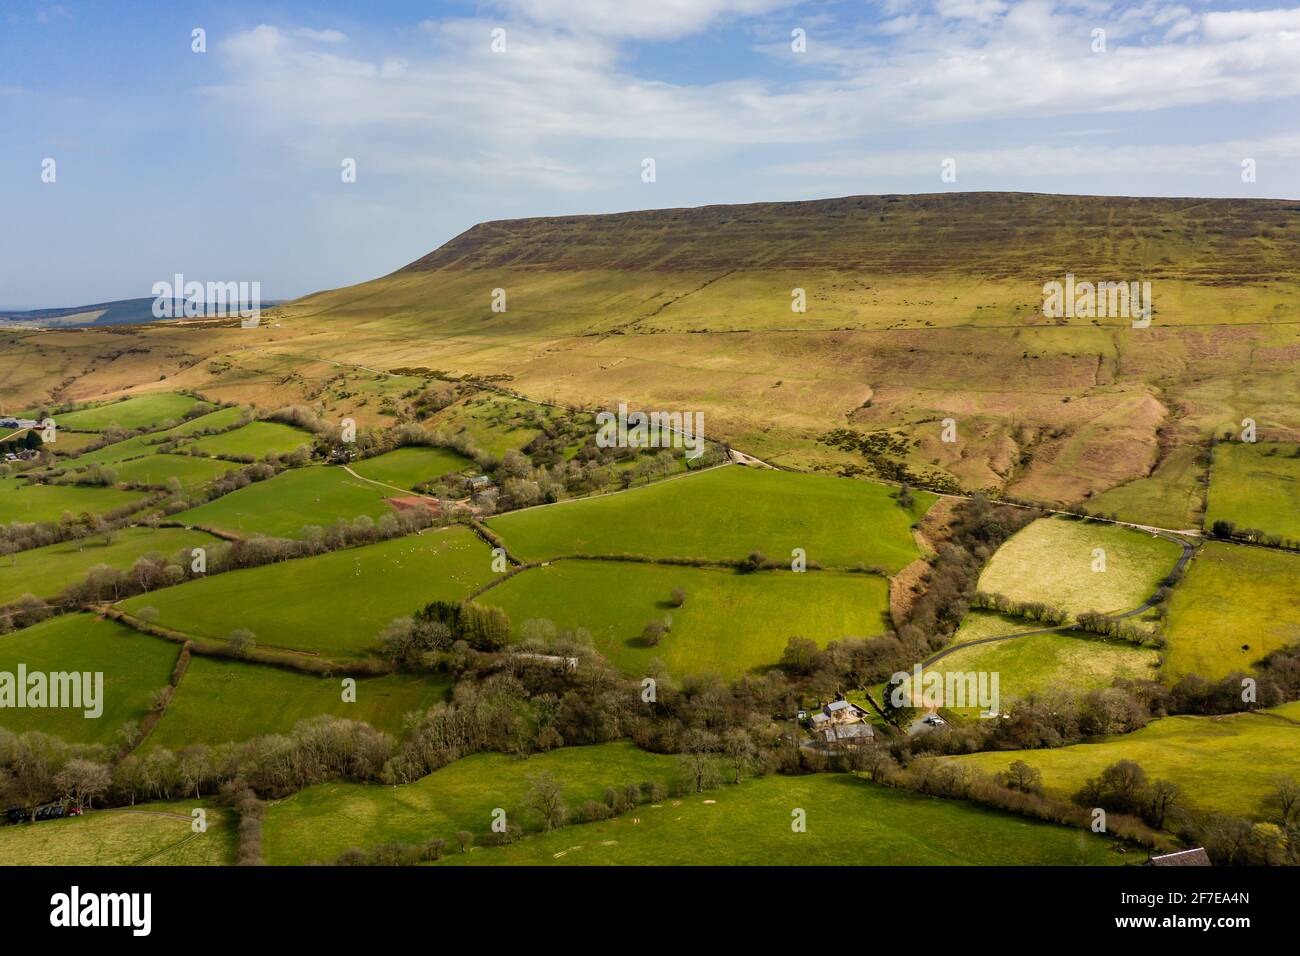 Vista aerea dei terreni agricoli e delle colline del Galles (Hay Bluff sul confine gallese/inglese) Foto Stock